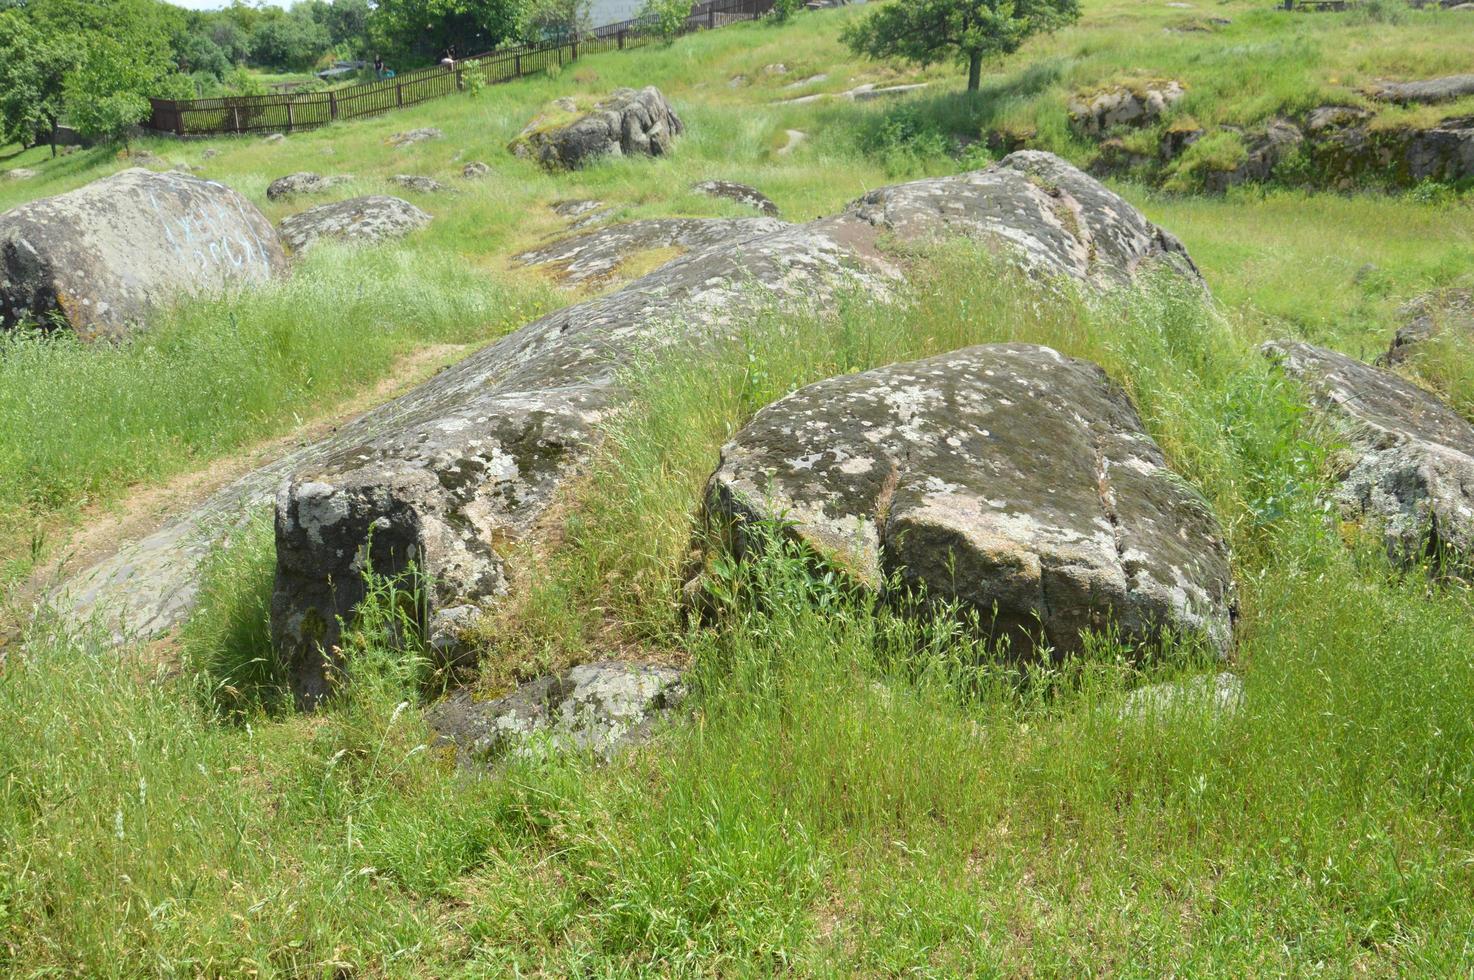 grandes pedras antigas no campo foto